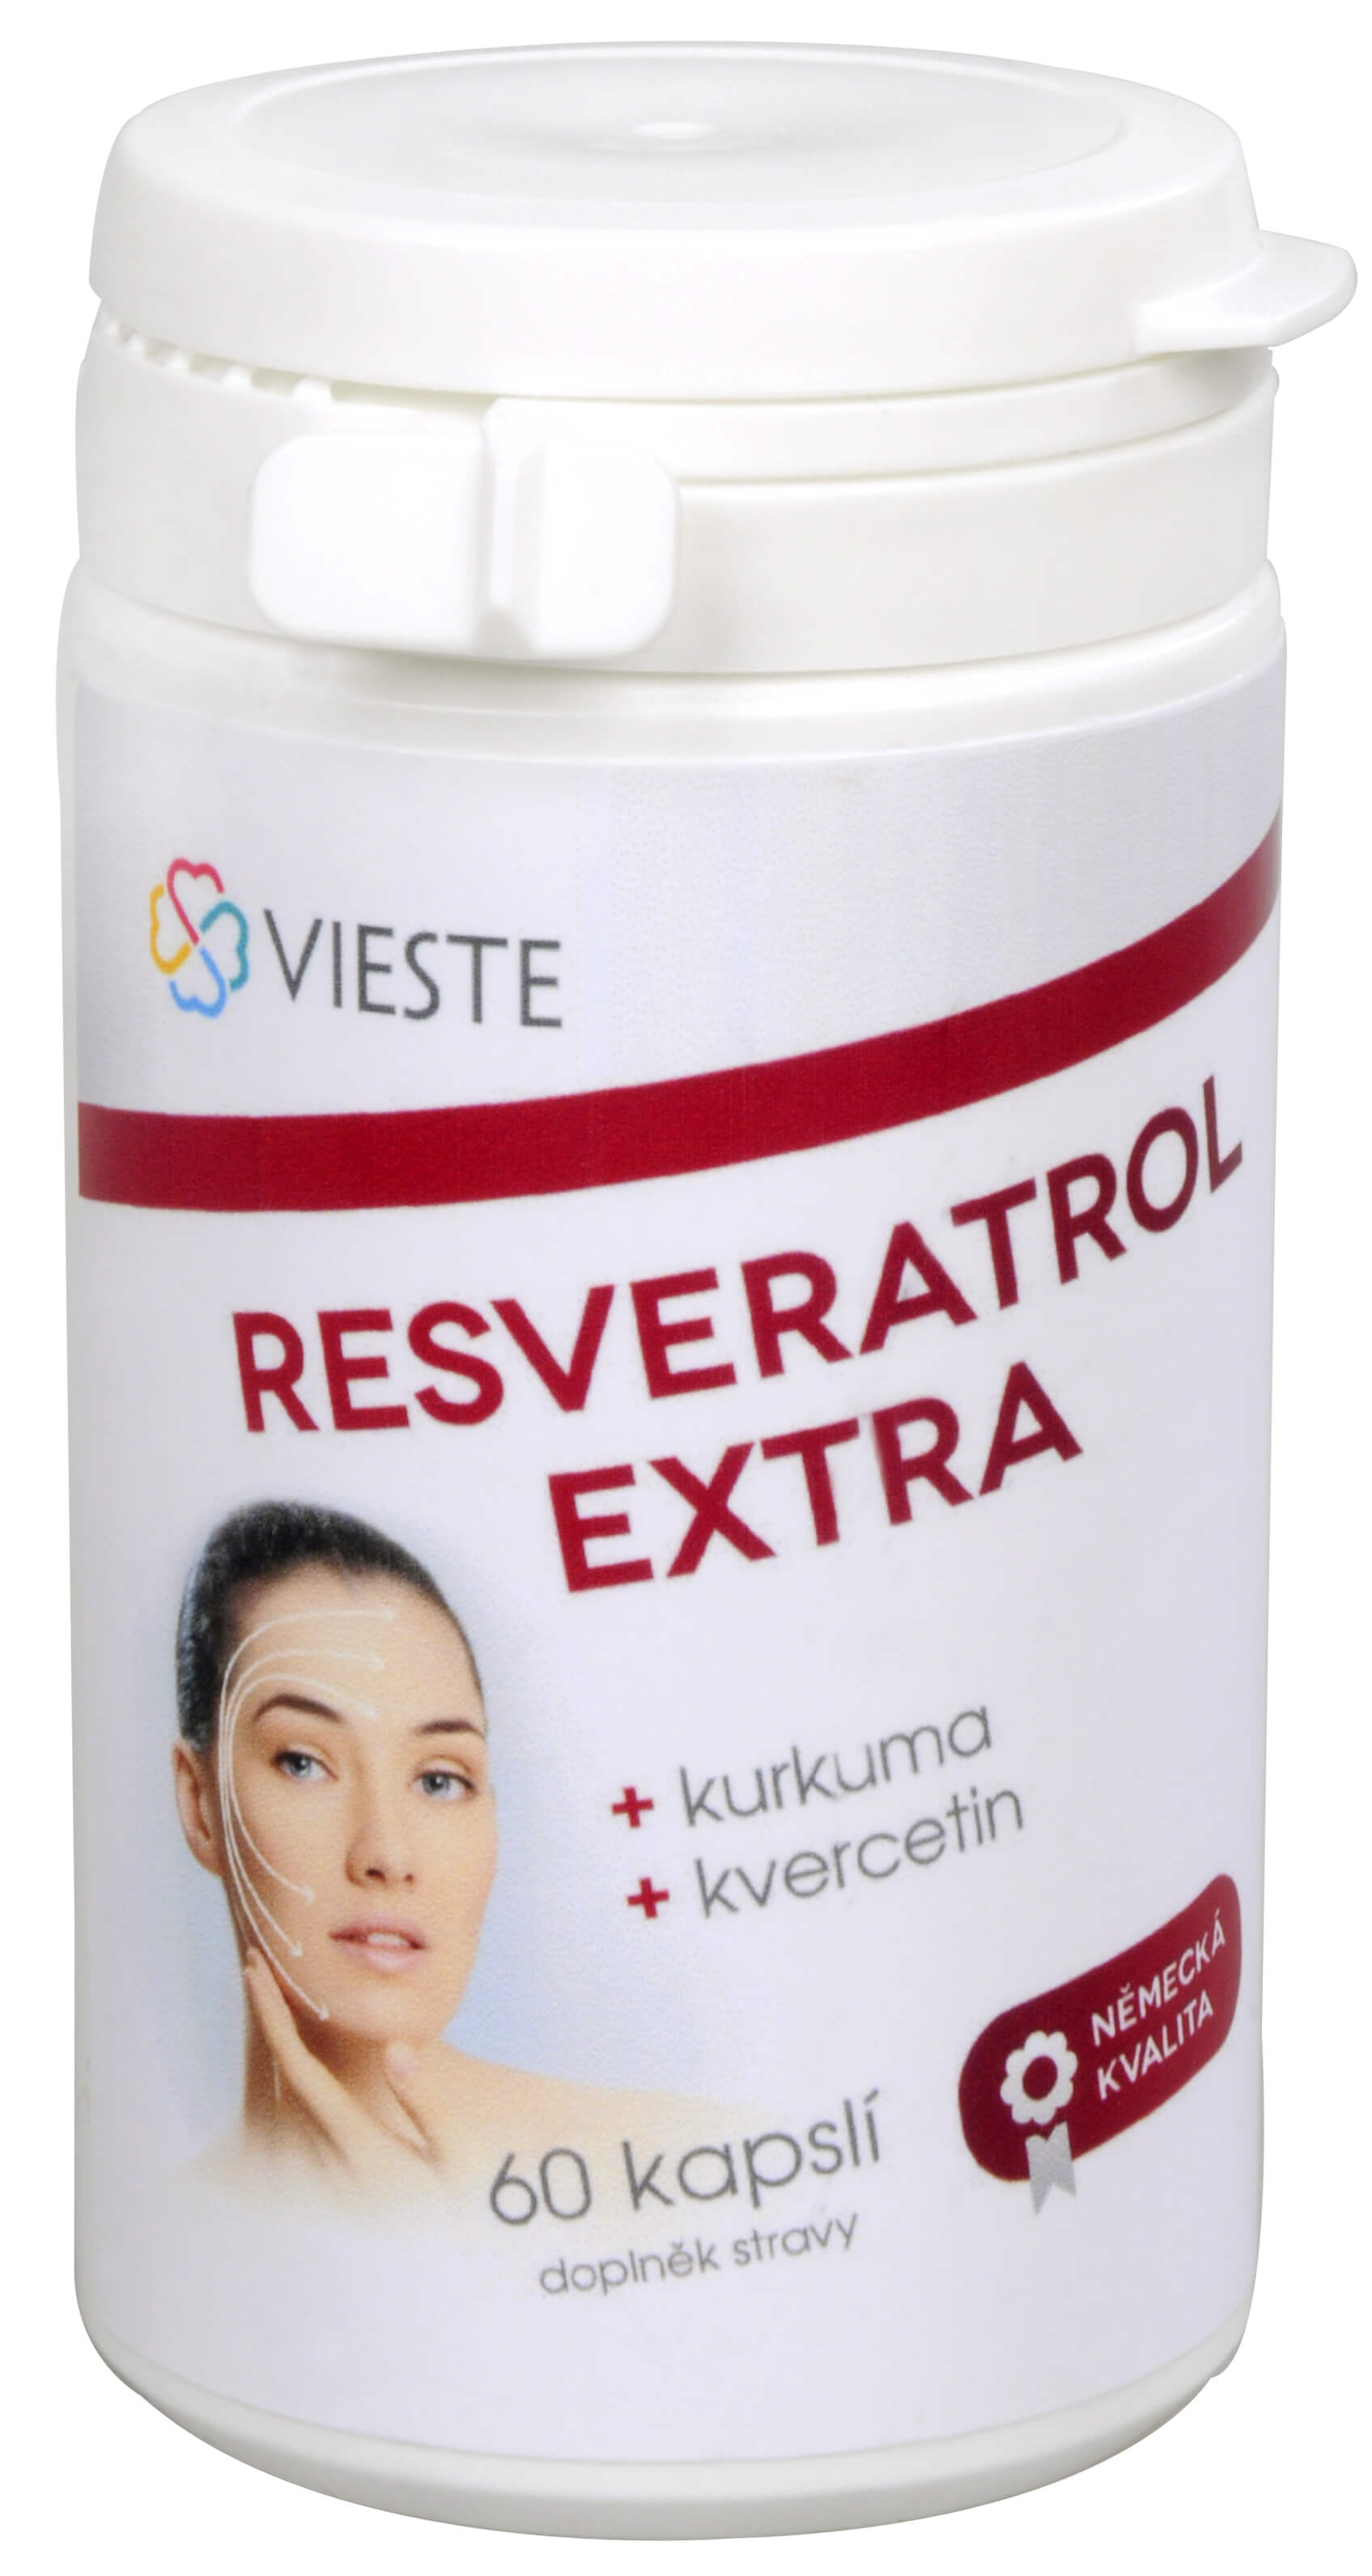 Zobrazit detail výrobku Vieste Resveratrol Extra 60 kapslí + 2 měsíce na vrácení zboží